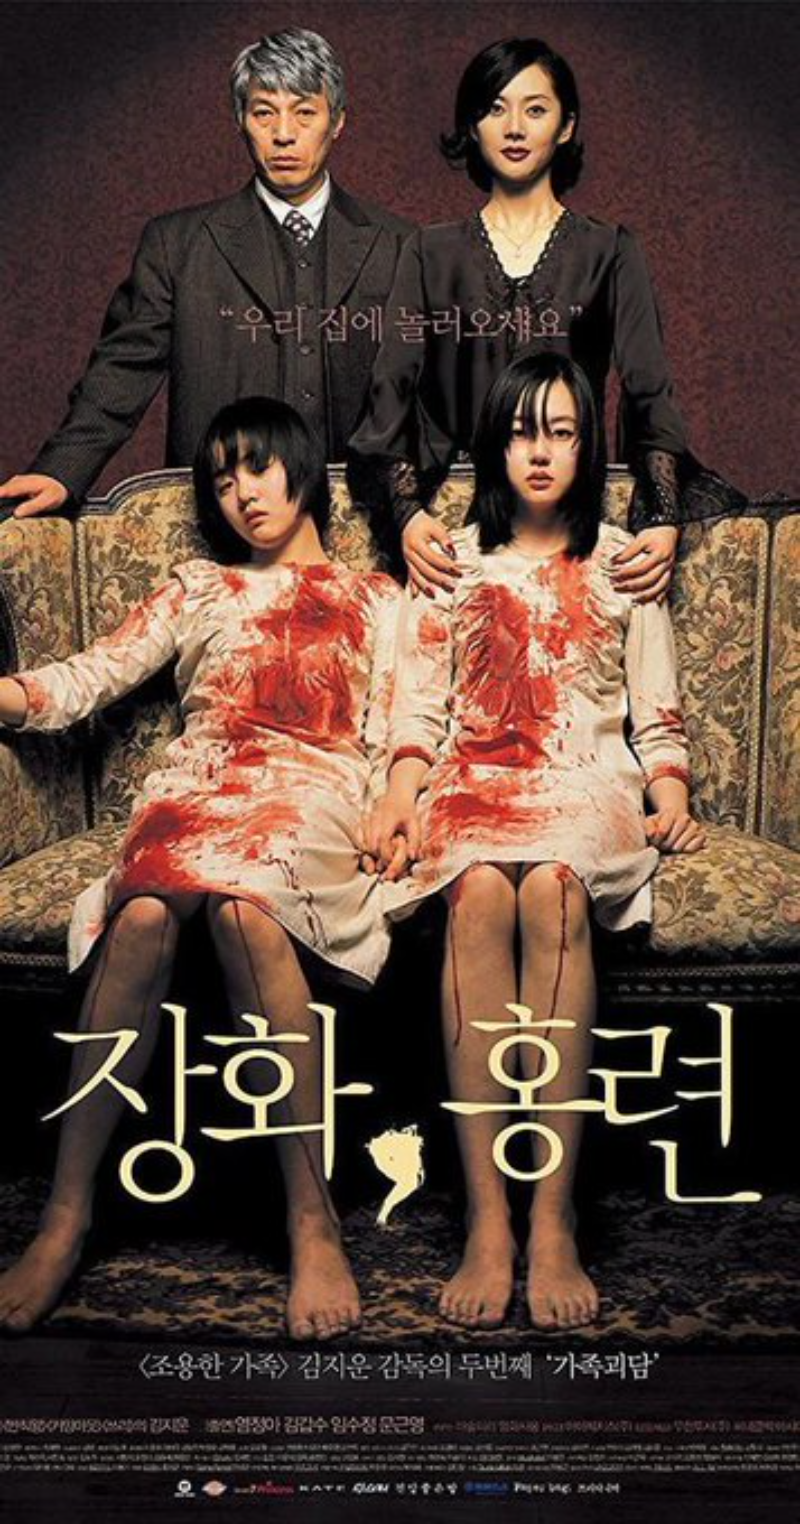 10 Rekomendasi Film Horor Korea yang Bikin Bulu Kuduk Berdiri untuk Malam Jumat Kamu!